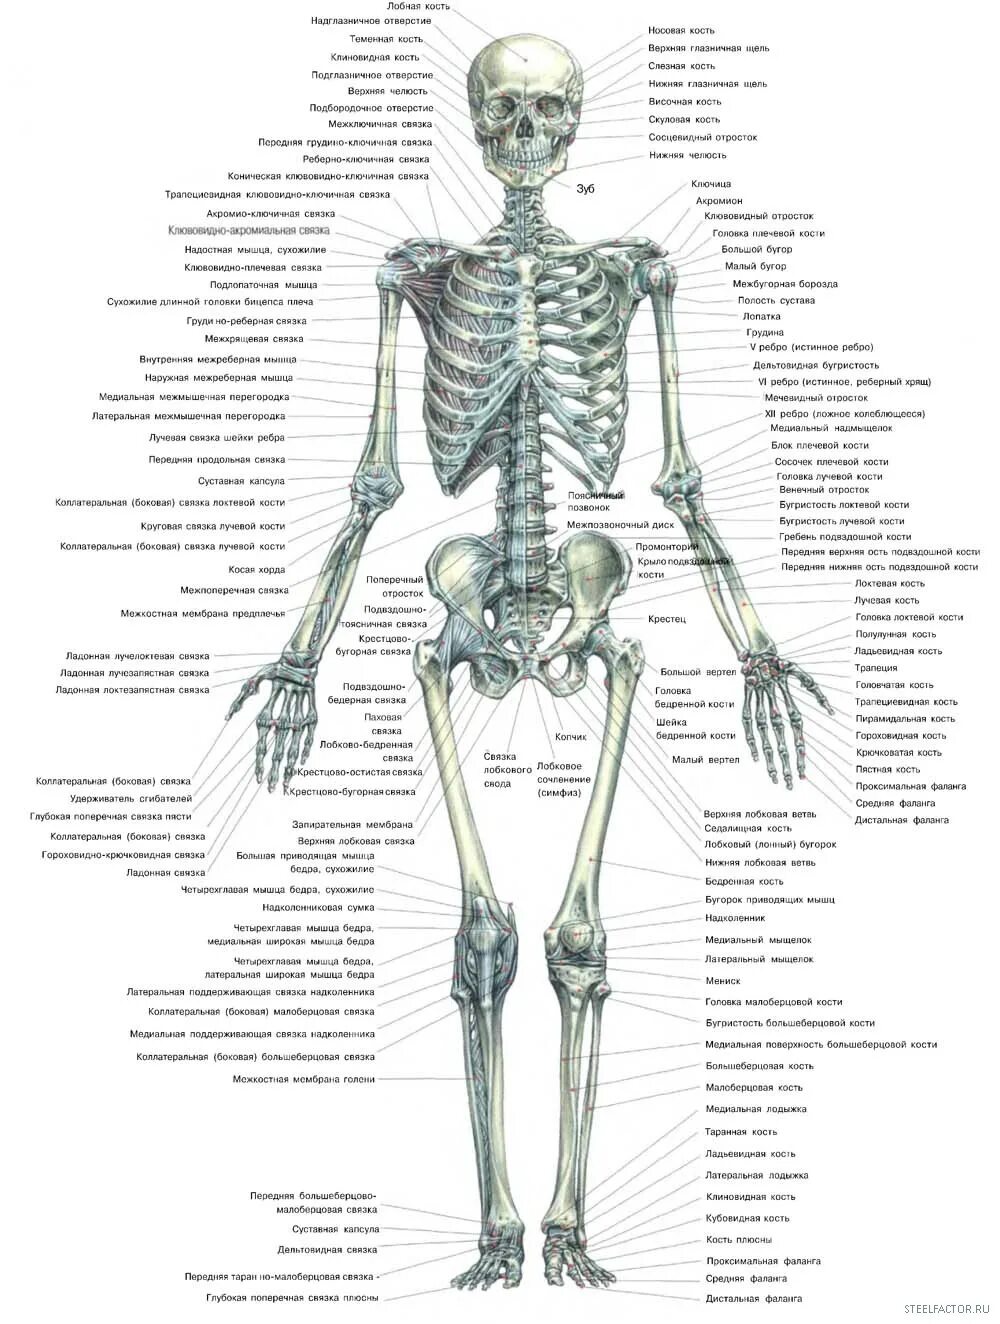 Строение костей скелета. Анатомическое строение скелета человека. Строение скелета кости. Анатомия скелета человека с названиями костей.